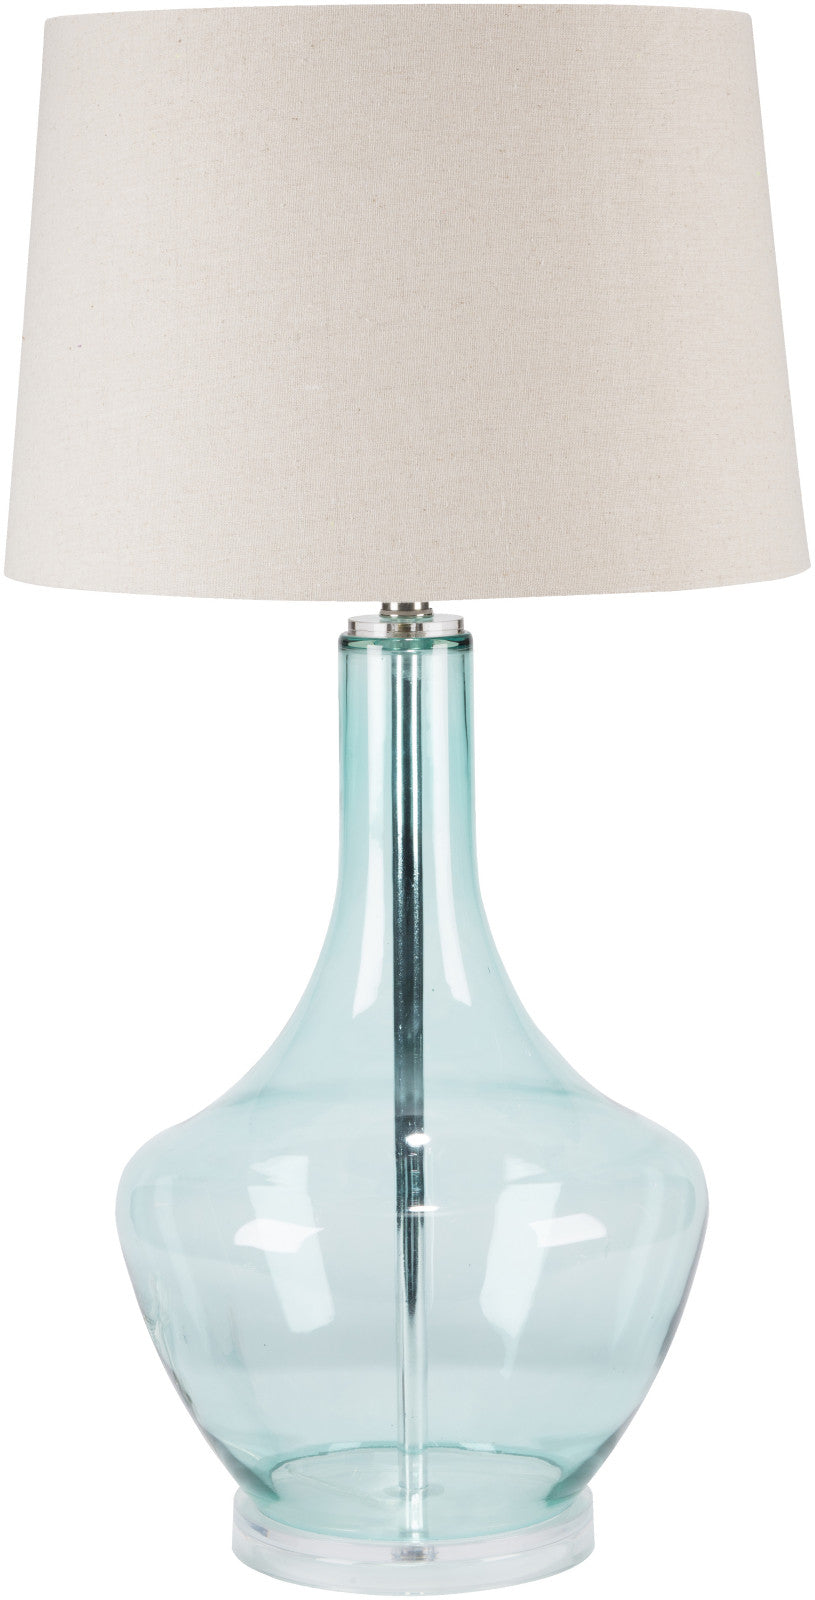 Surya Easton ENLP-001 Oatmeal Lamp Table Lamp